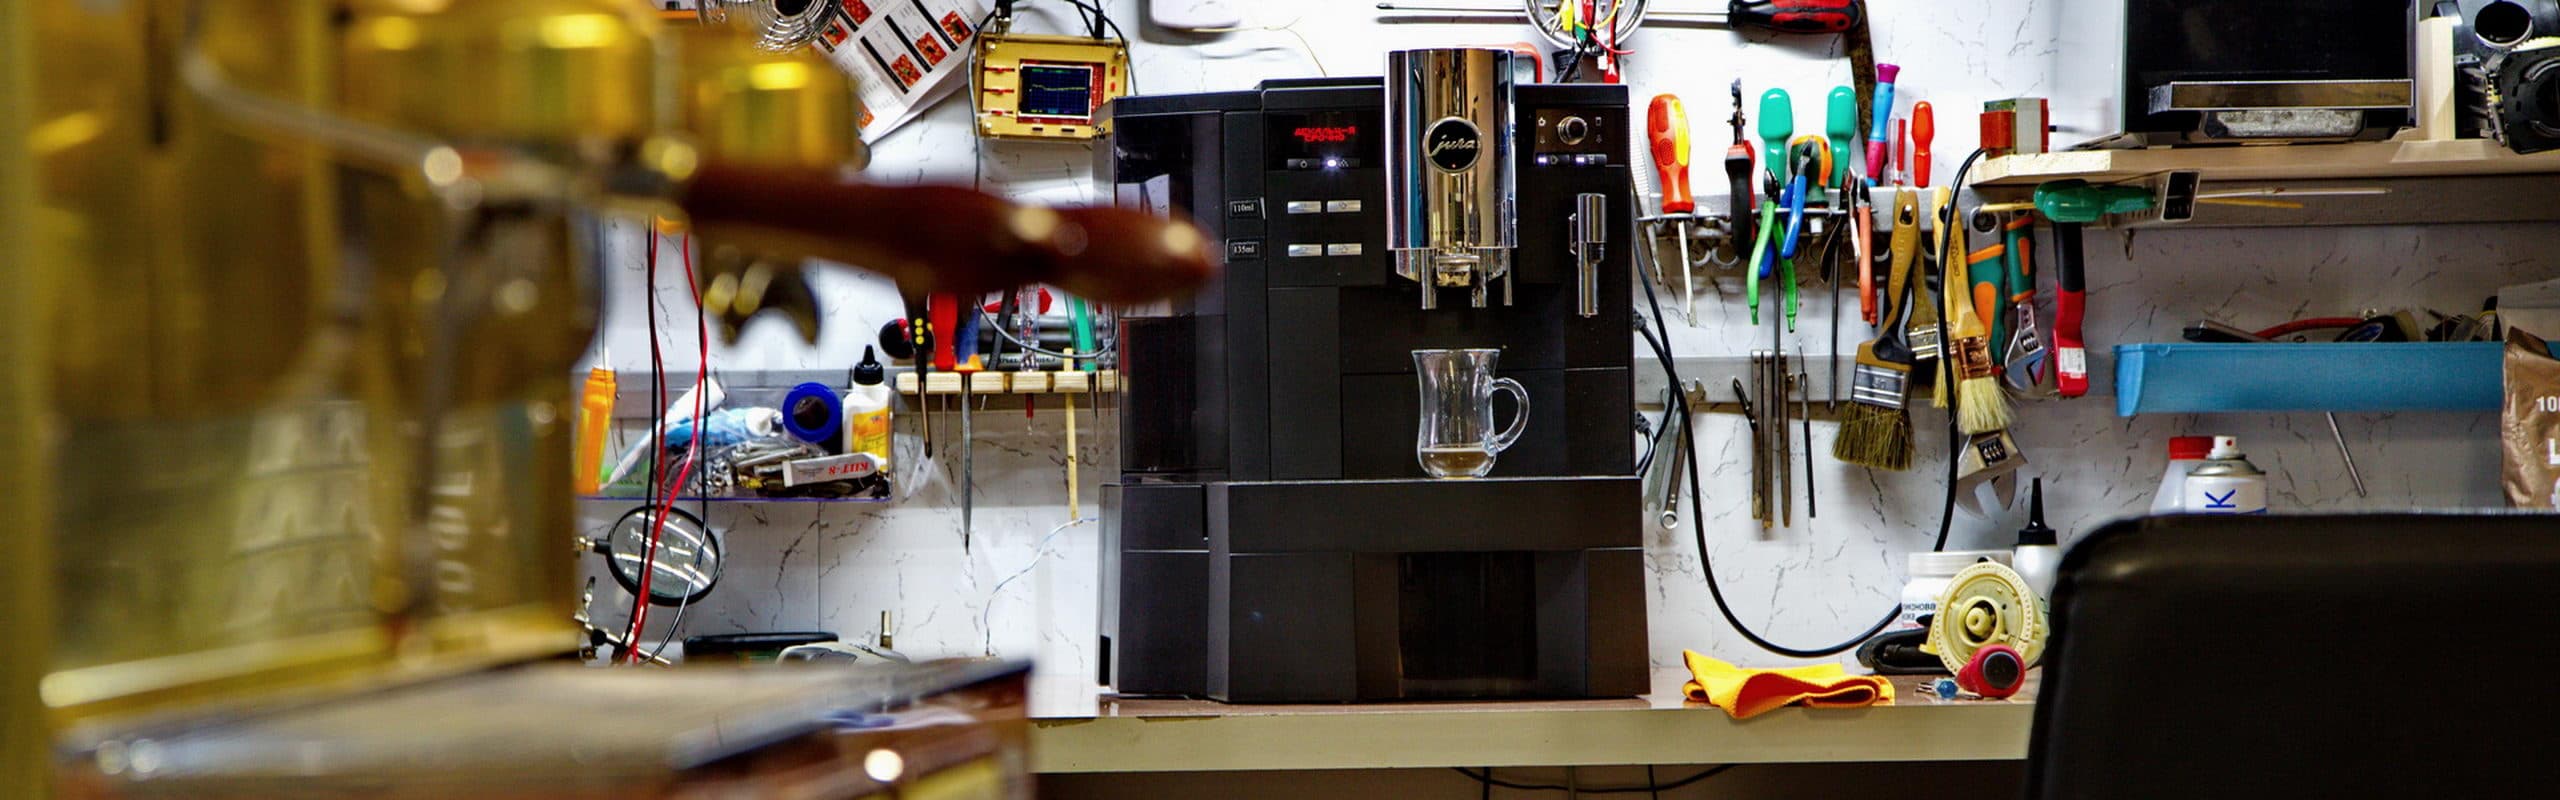 Обслуживание и ремонт кофемашин в Киеве